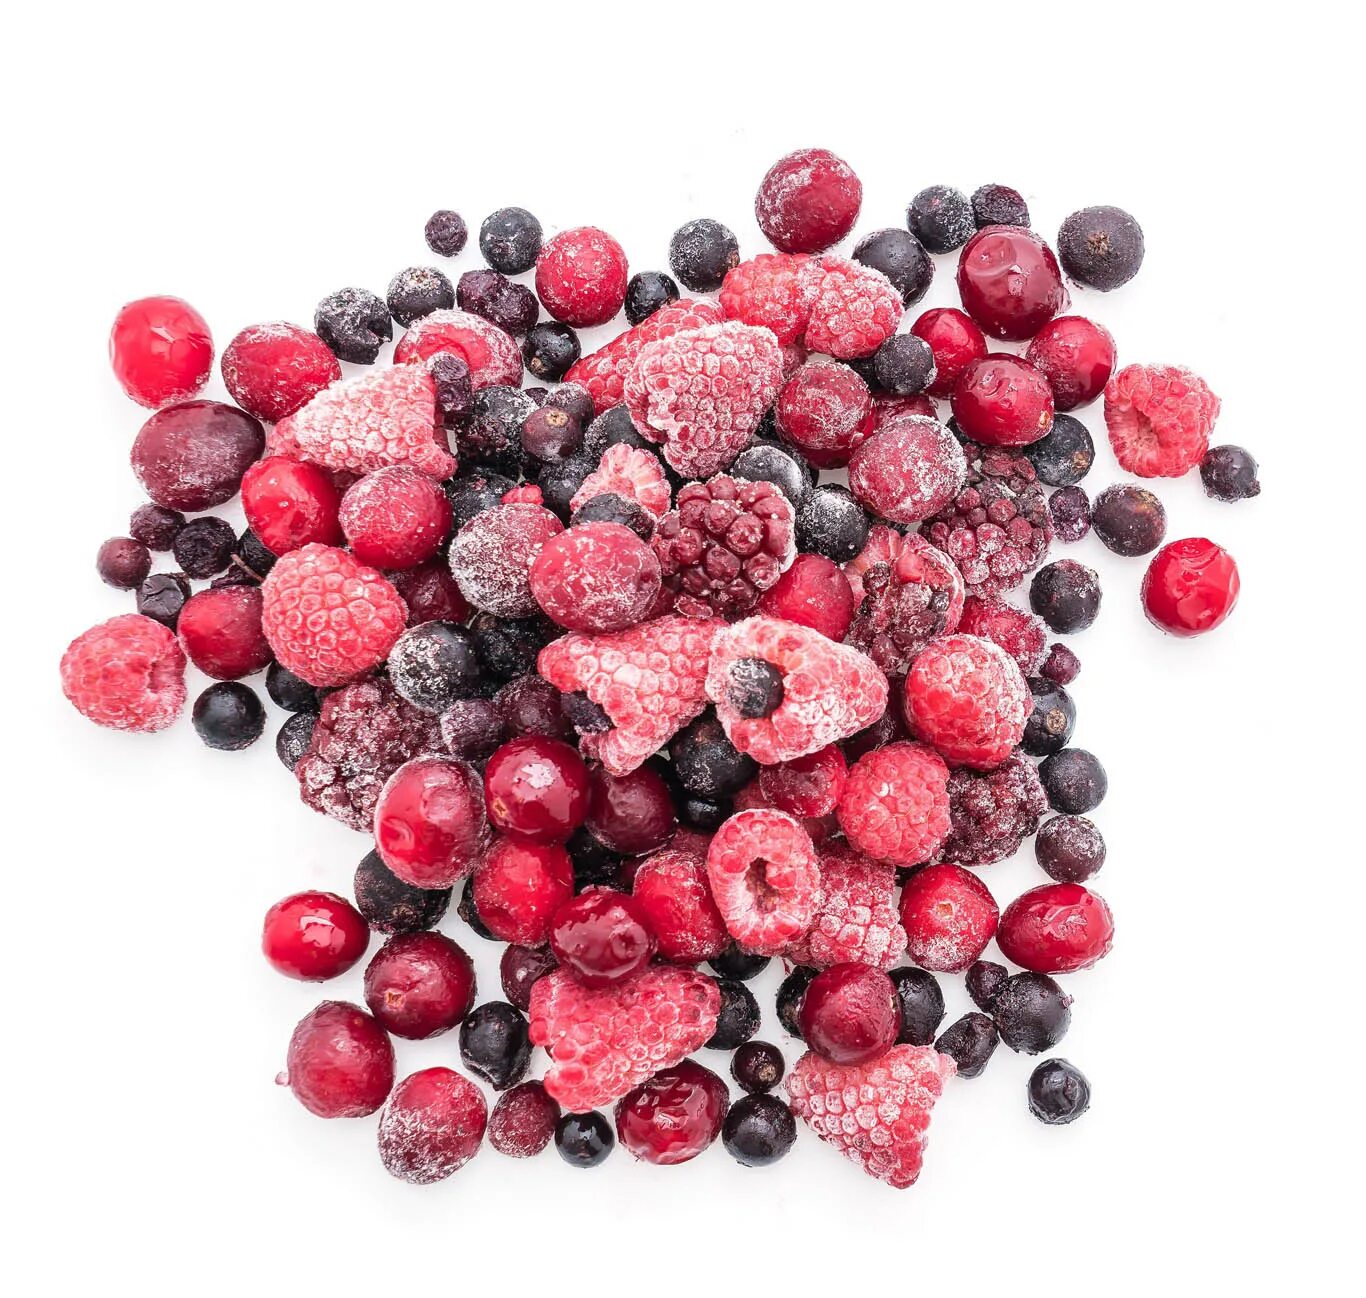 Замороженные ягоды и овощи. Россыпь ягод. Ягода свежемороженая. Розовые ягоды. Замороженные ягоды.